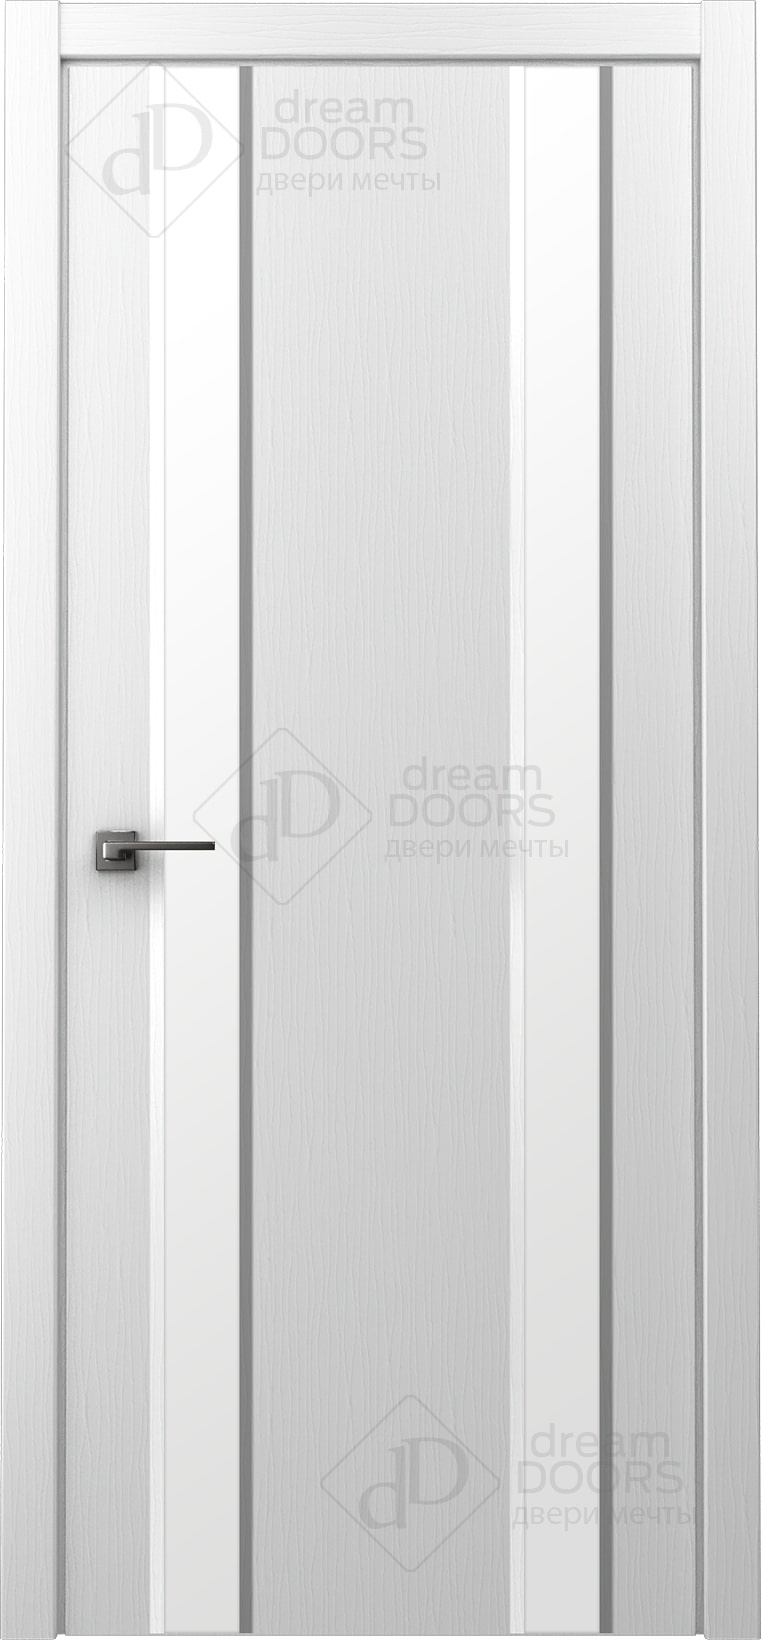 Dream Doors Межкомнатная дверь Стиль 2 узкое ПО, арт. 20071 - фото №7